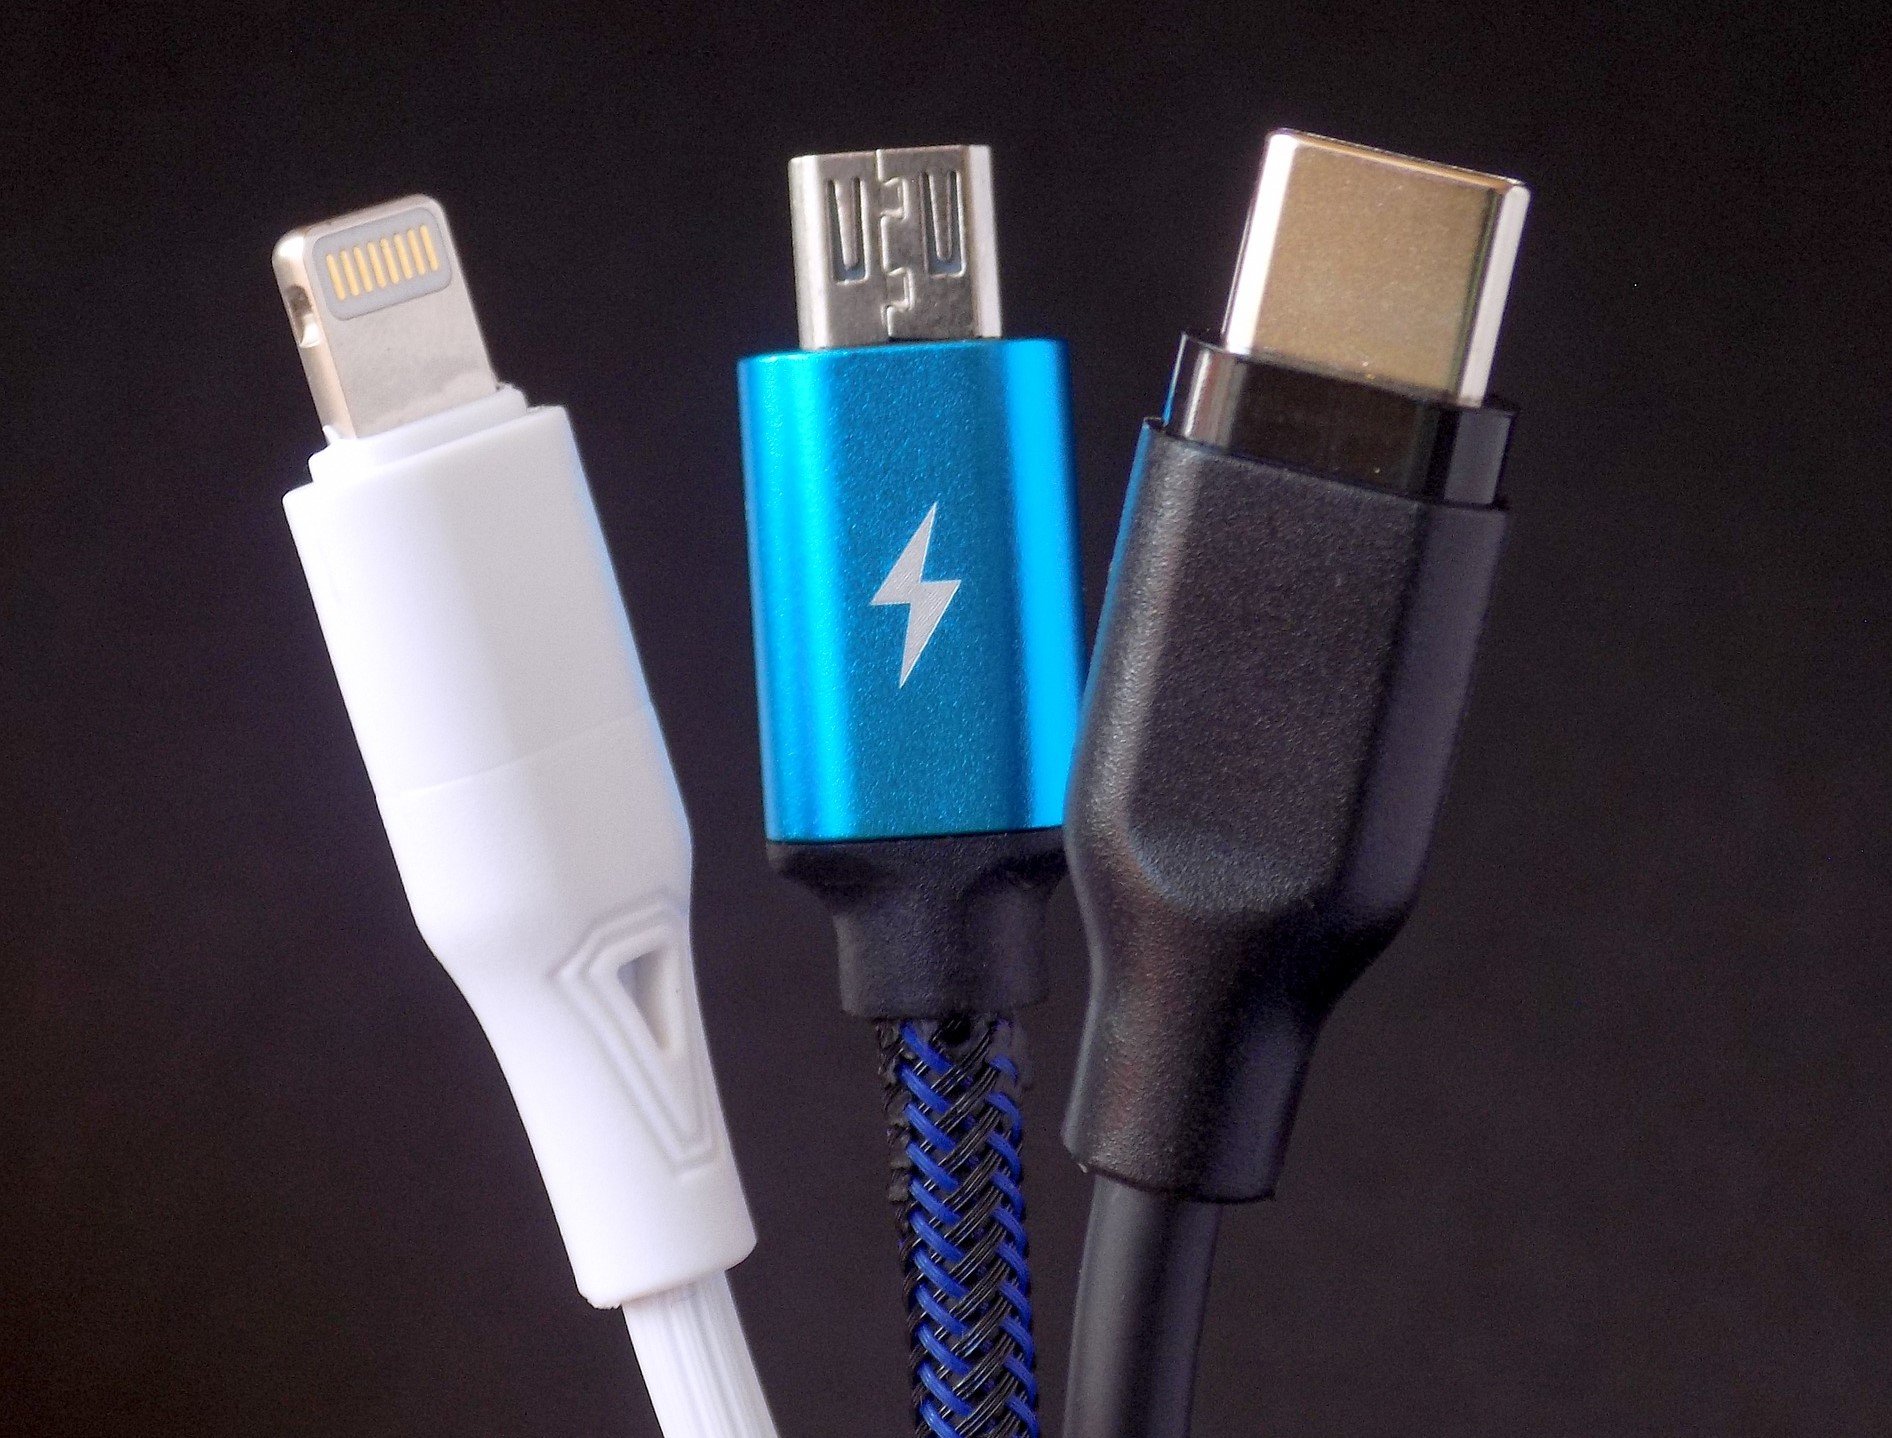 iPhone 12 : pas de chargeur mais un câble USB-C Lightning dans la